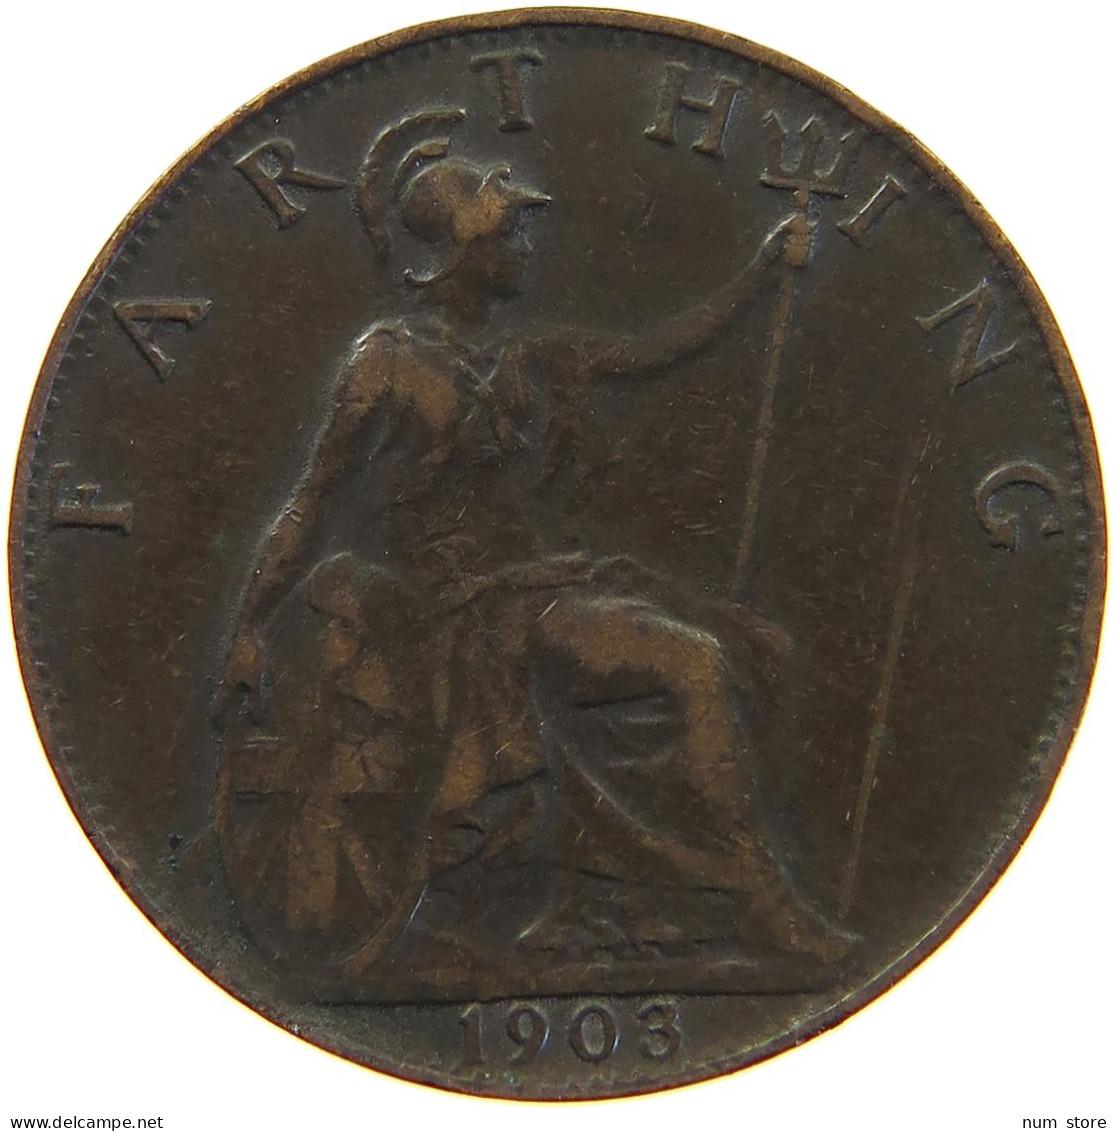 GREAT BRITAIN FARTHING 1903 Edward VII., 1901 - 1910 #c050 0333 - B. 1 Farthing